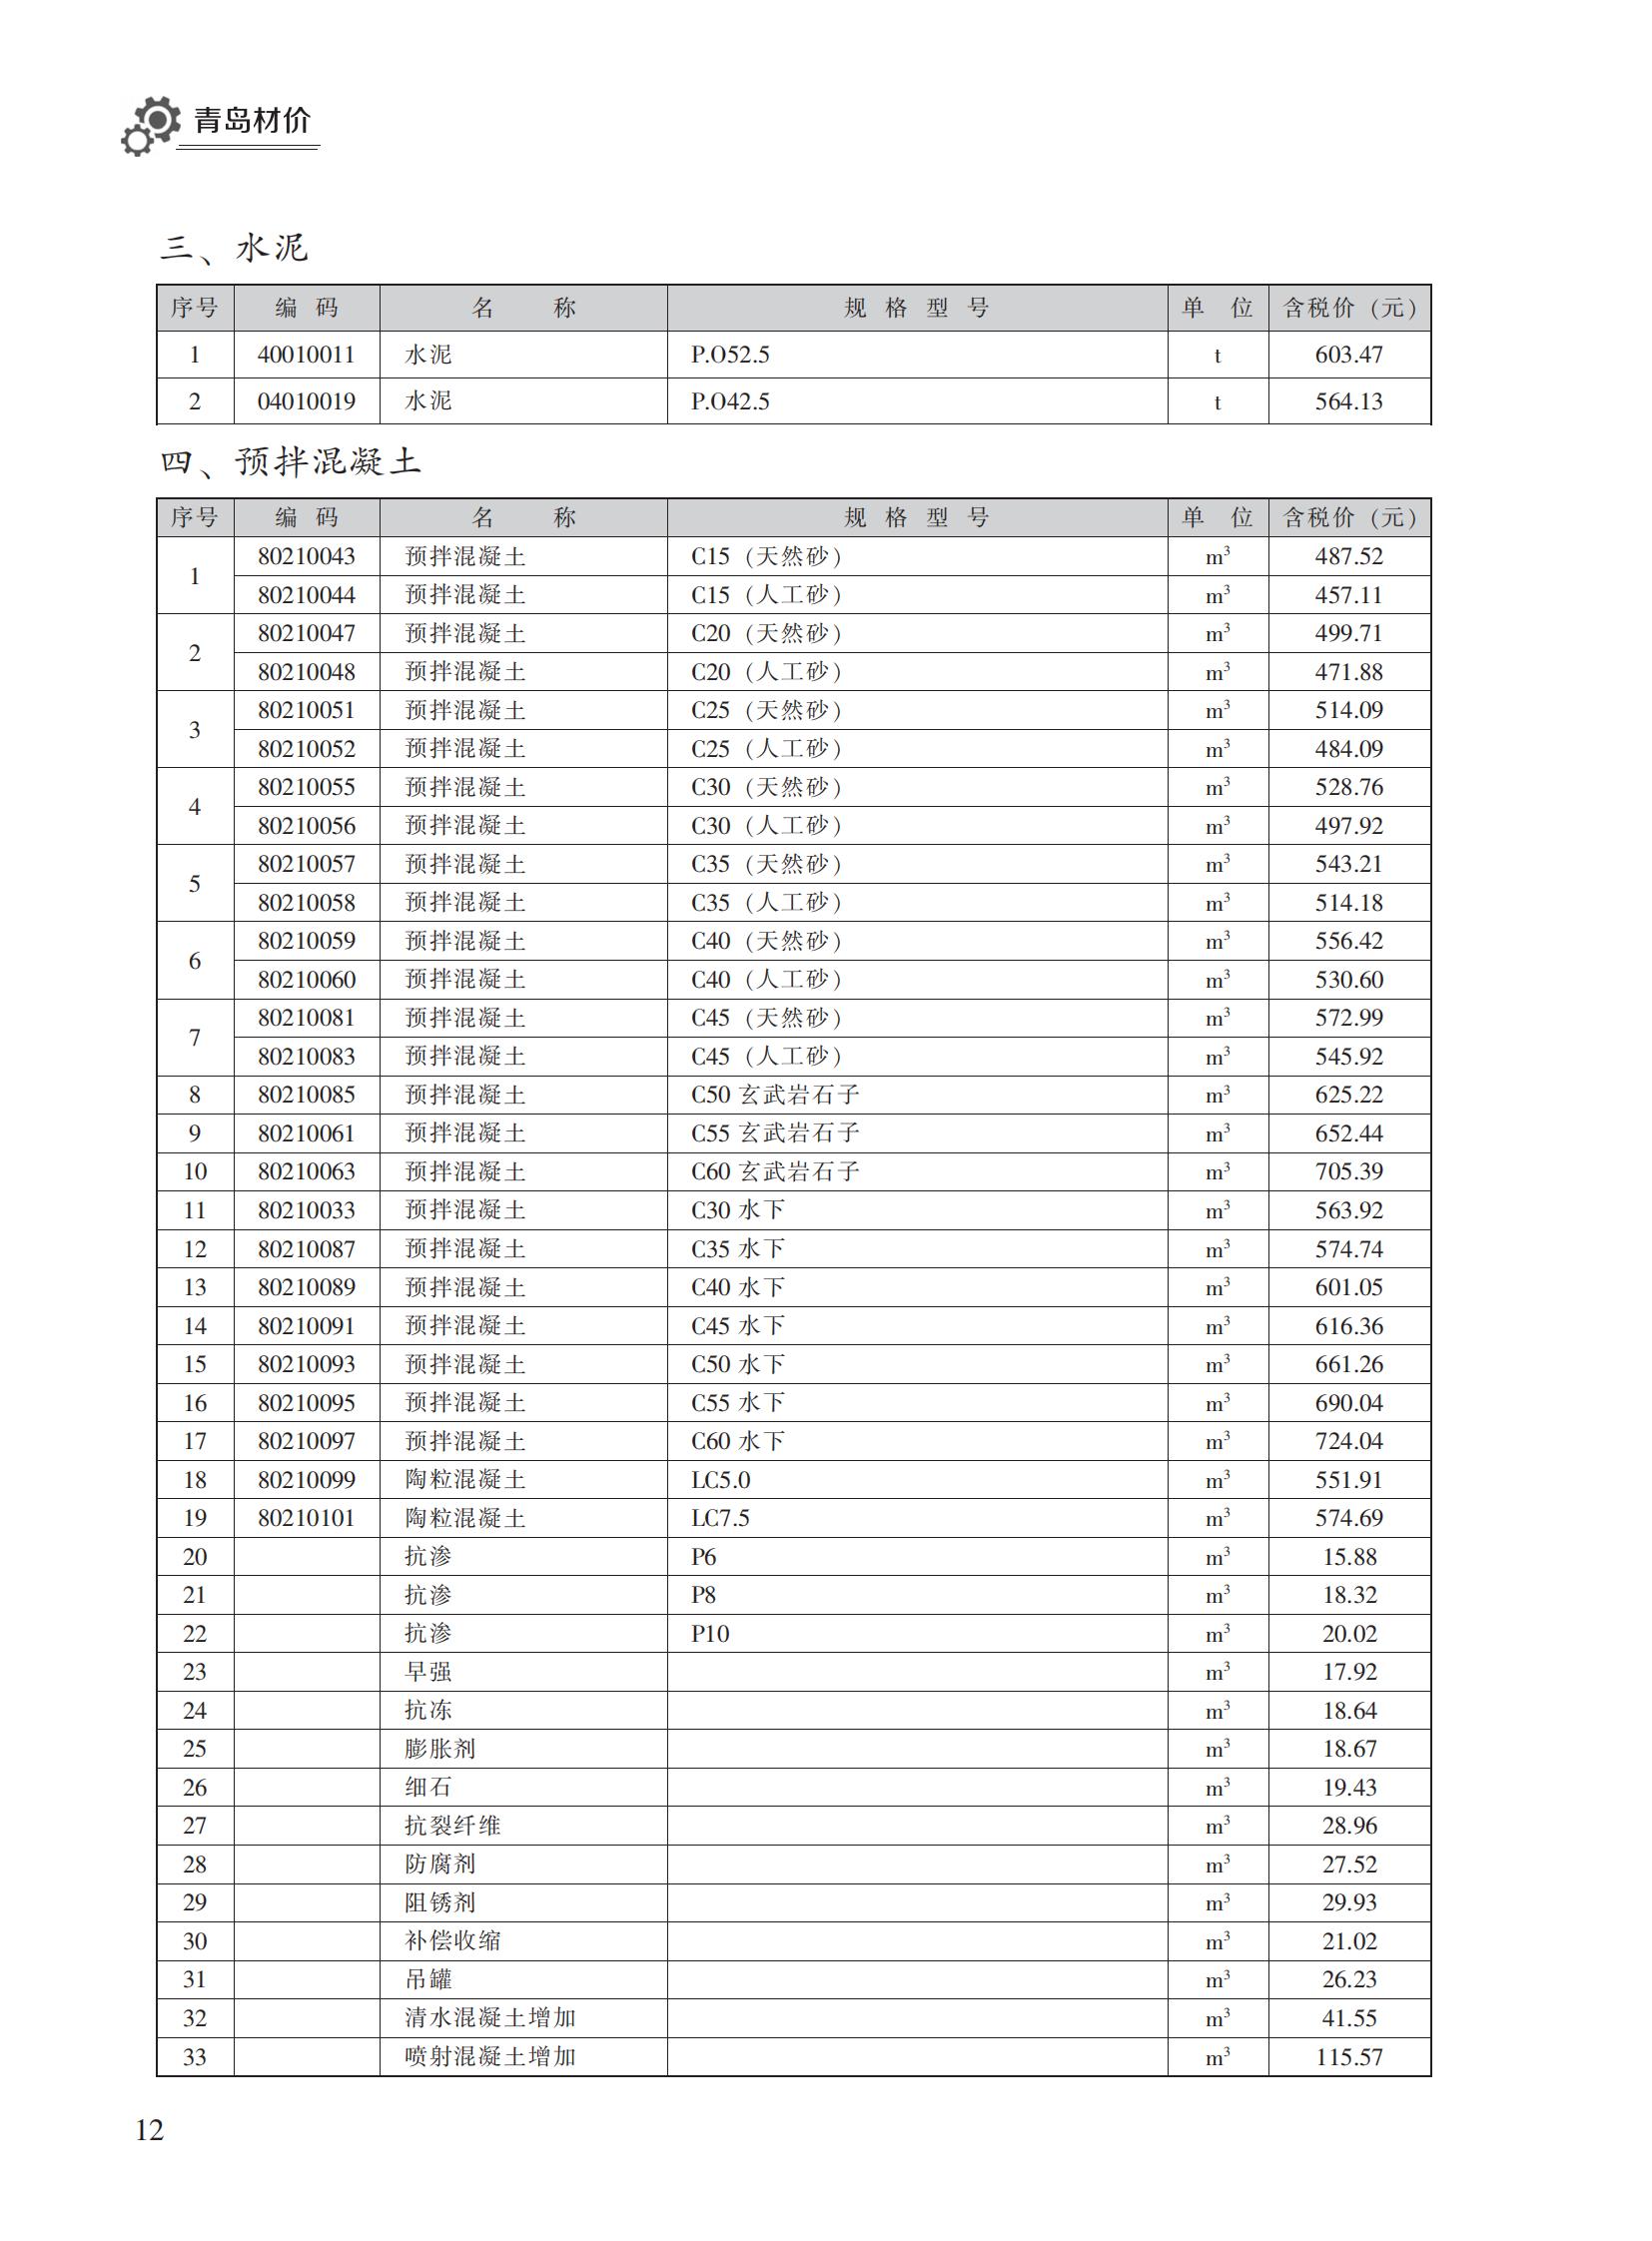 2022年11月青岛市建设工程材料价格及造价指数_11.jpg